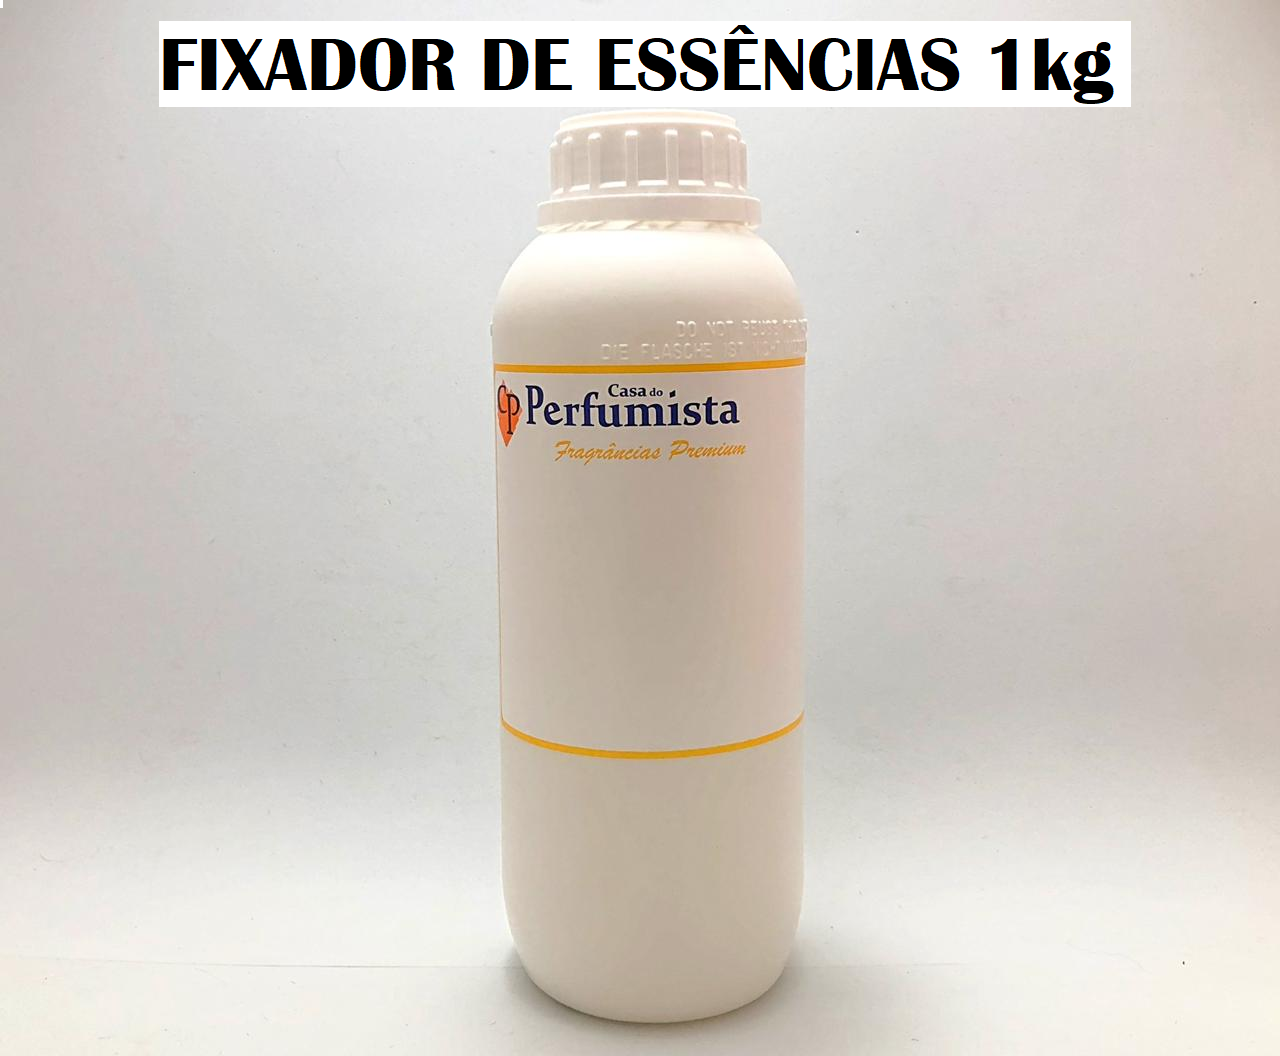 FIXADOR DE ESSÊNCIAS - 1kg